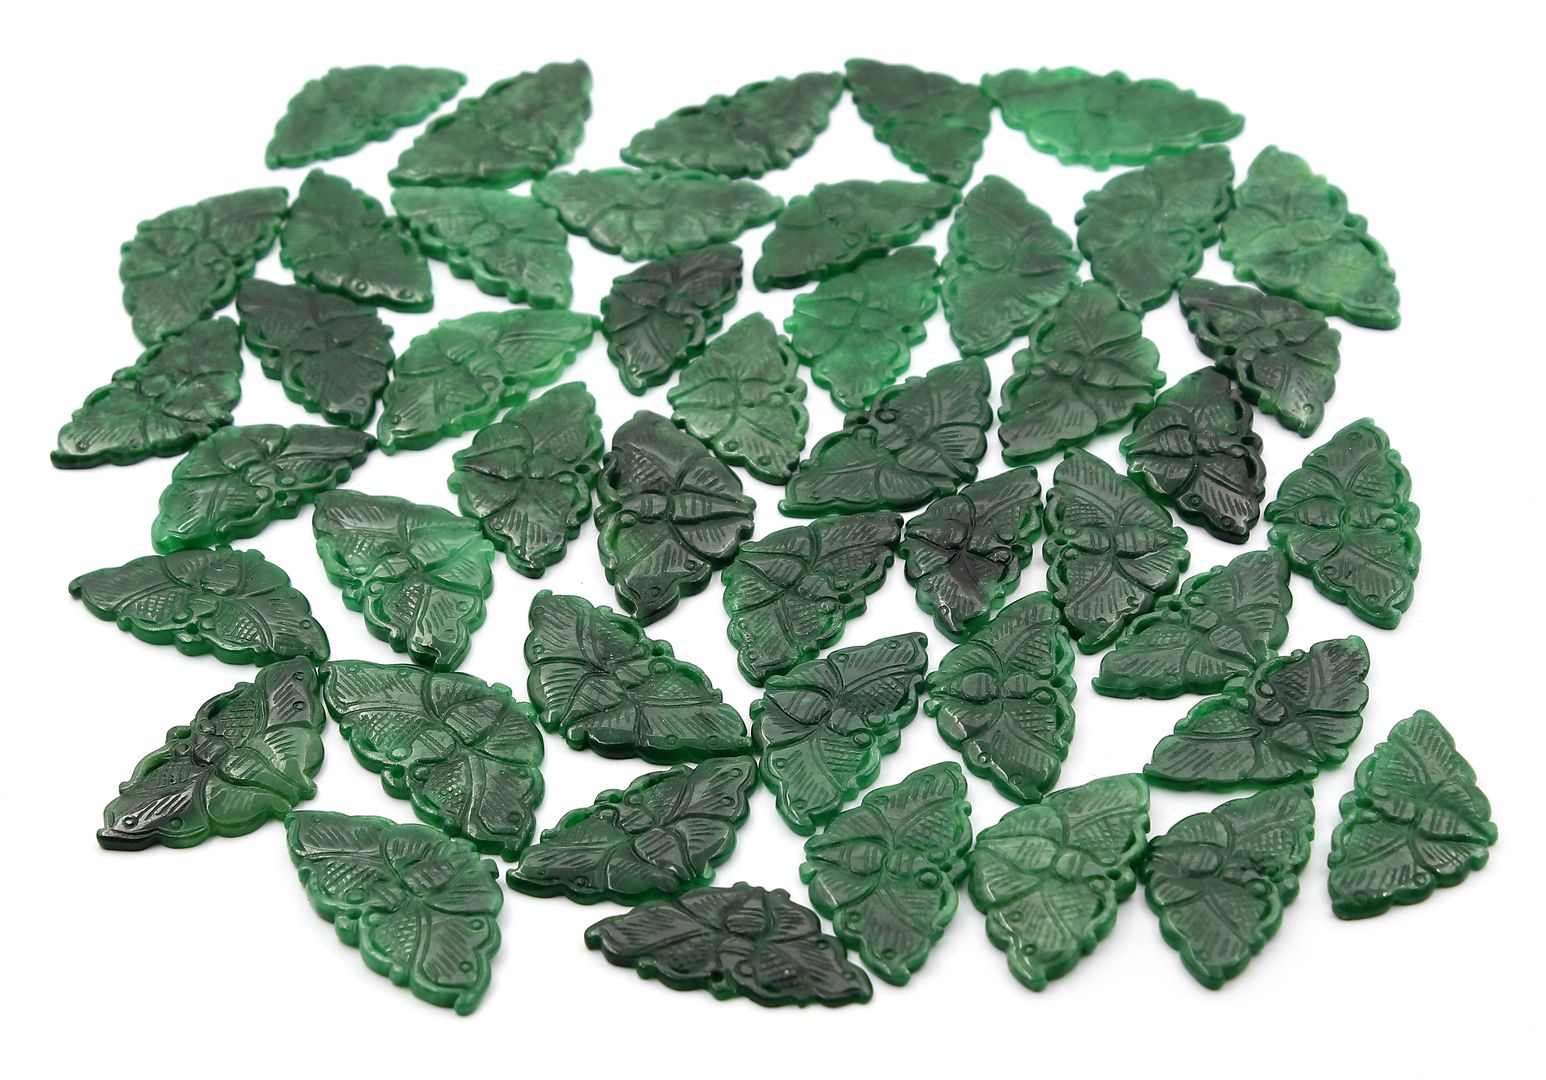 46 Jadegravuren in Schmetterlingsform.